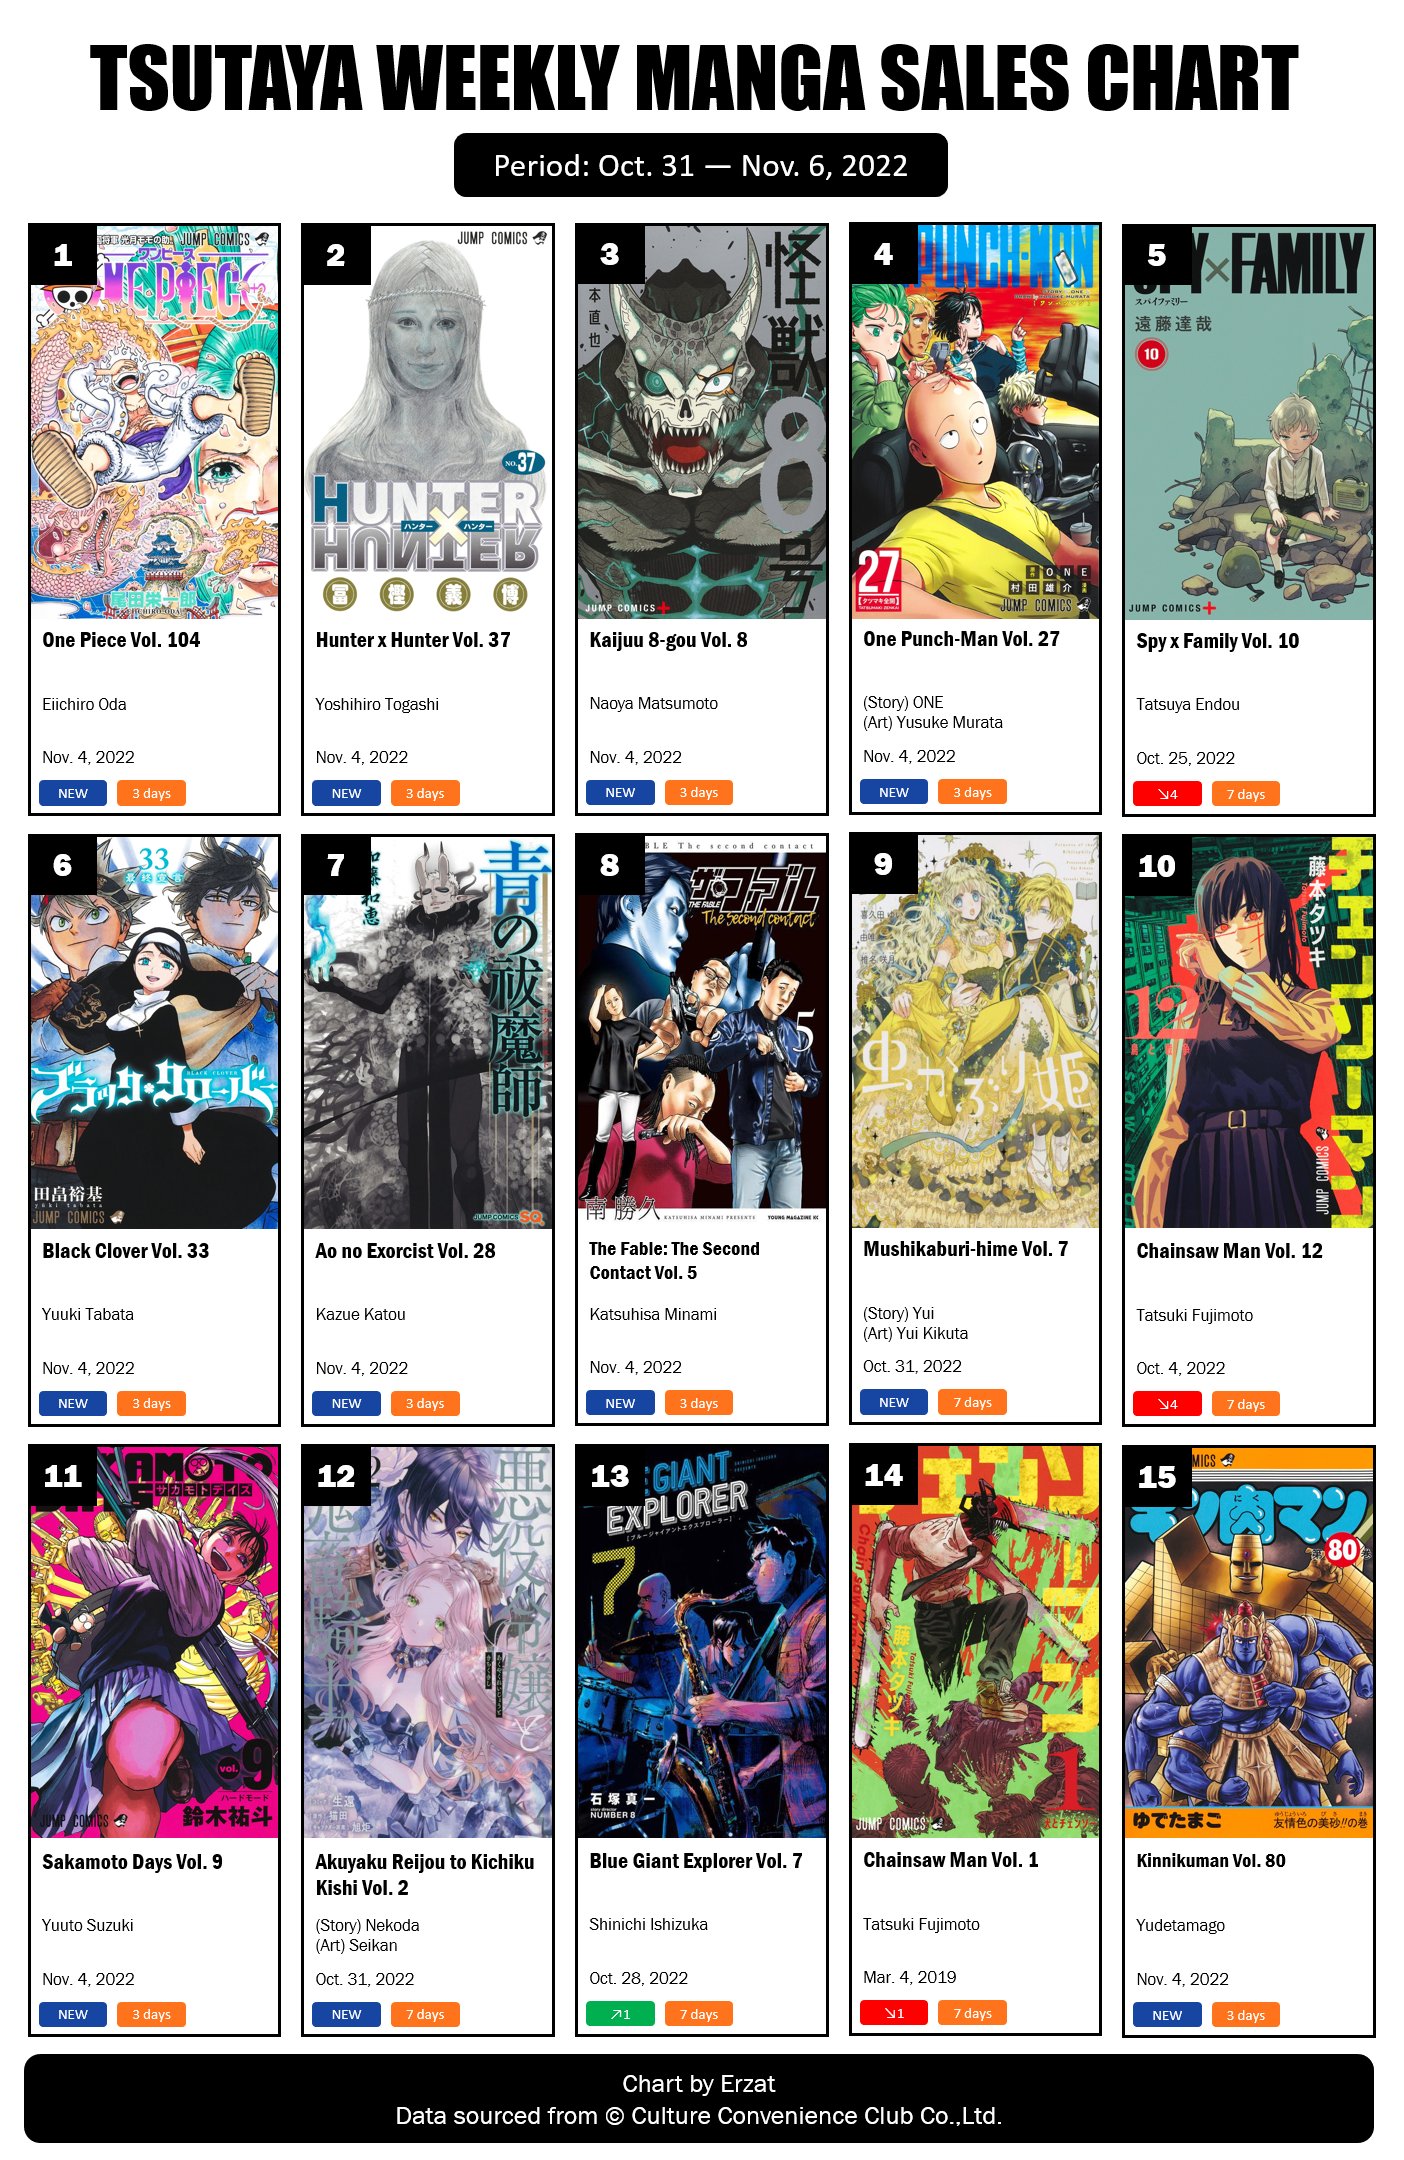 TSUTAYA Weekly Manga Sales Ranking: December 12 - December 18